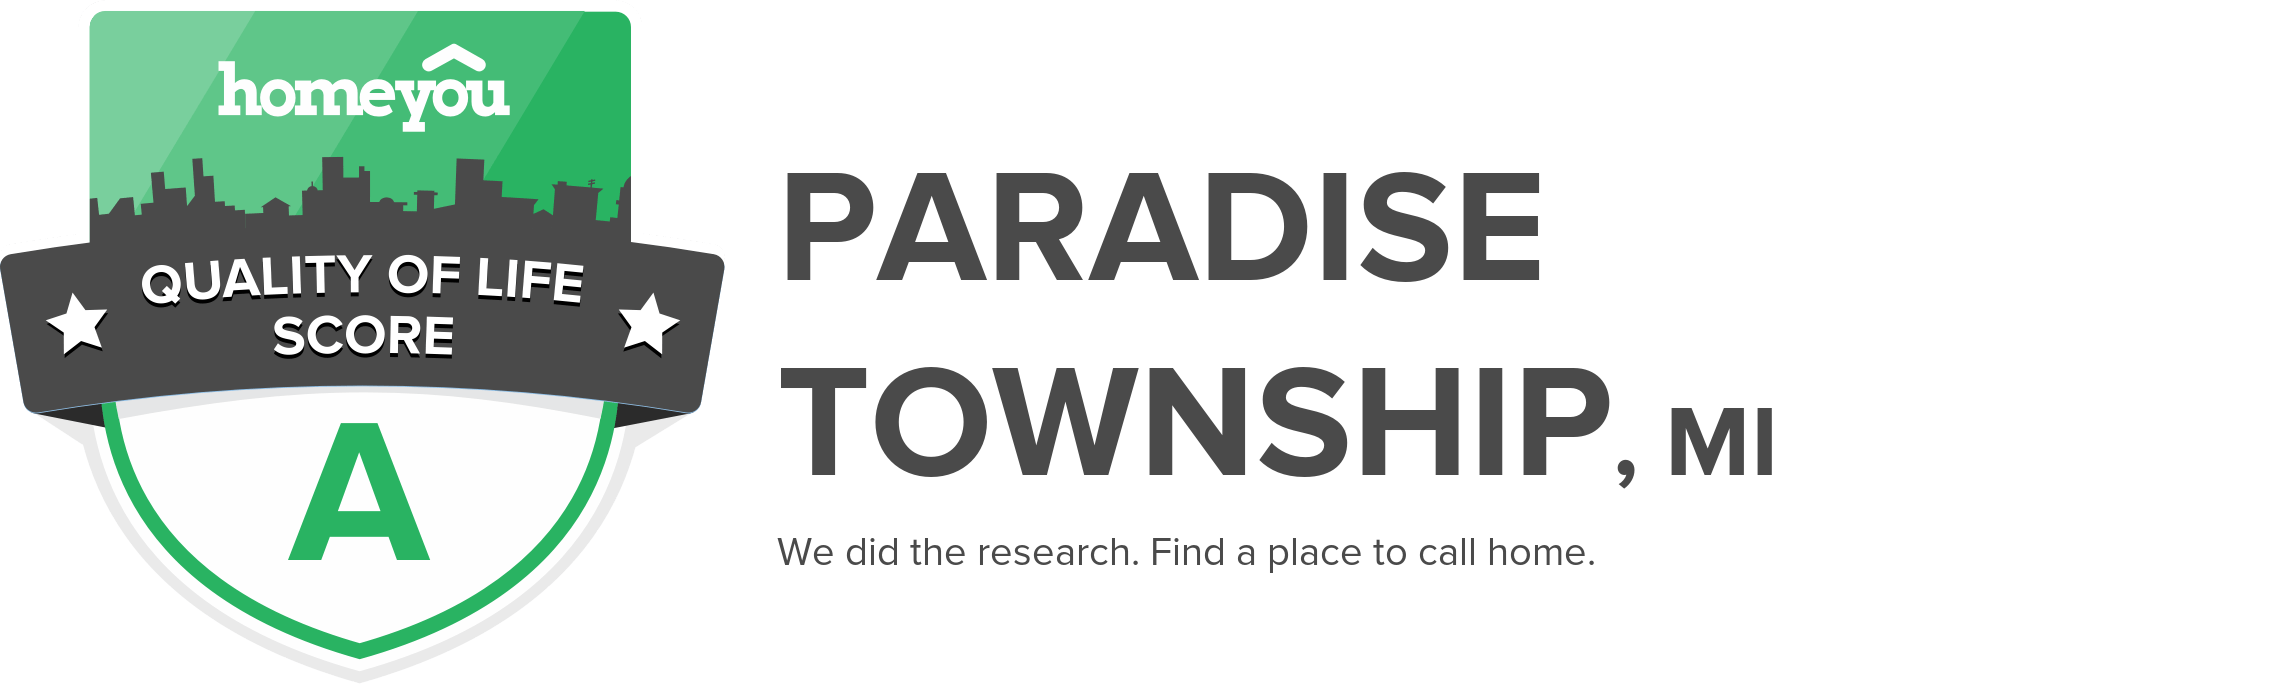 Paradise township, MI